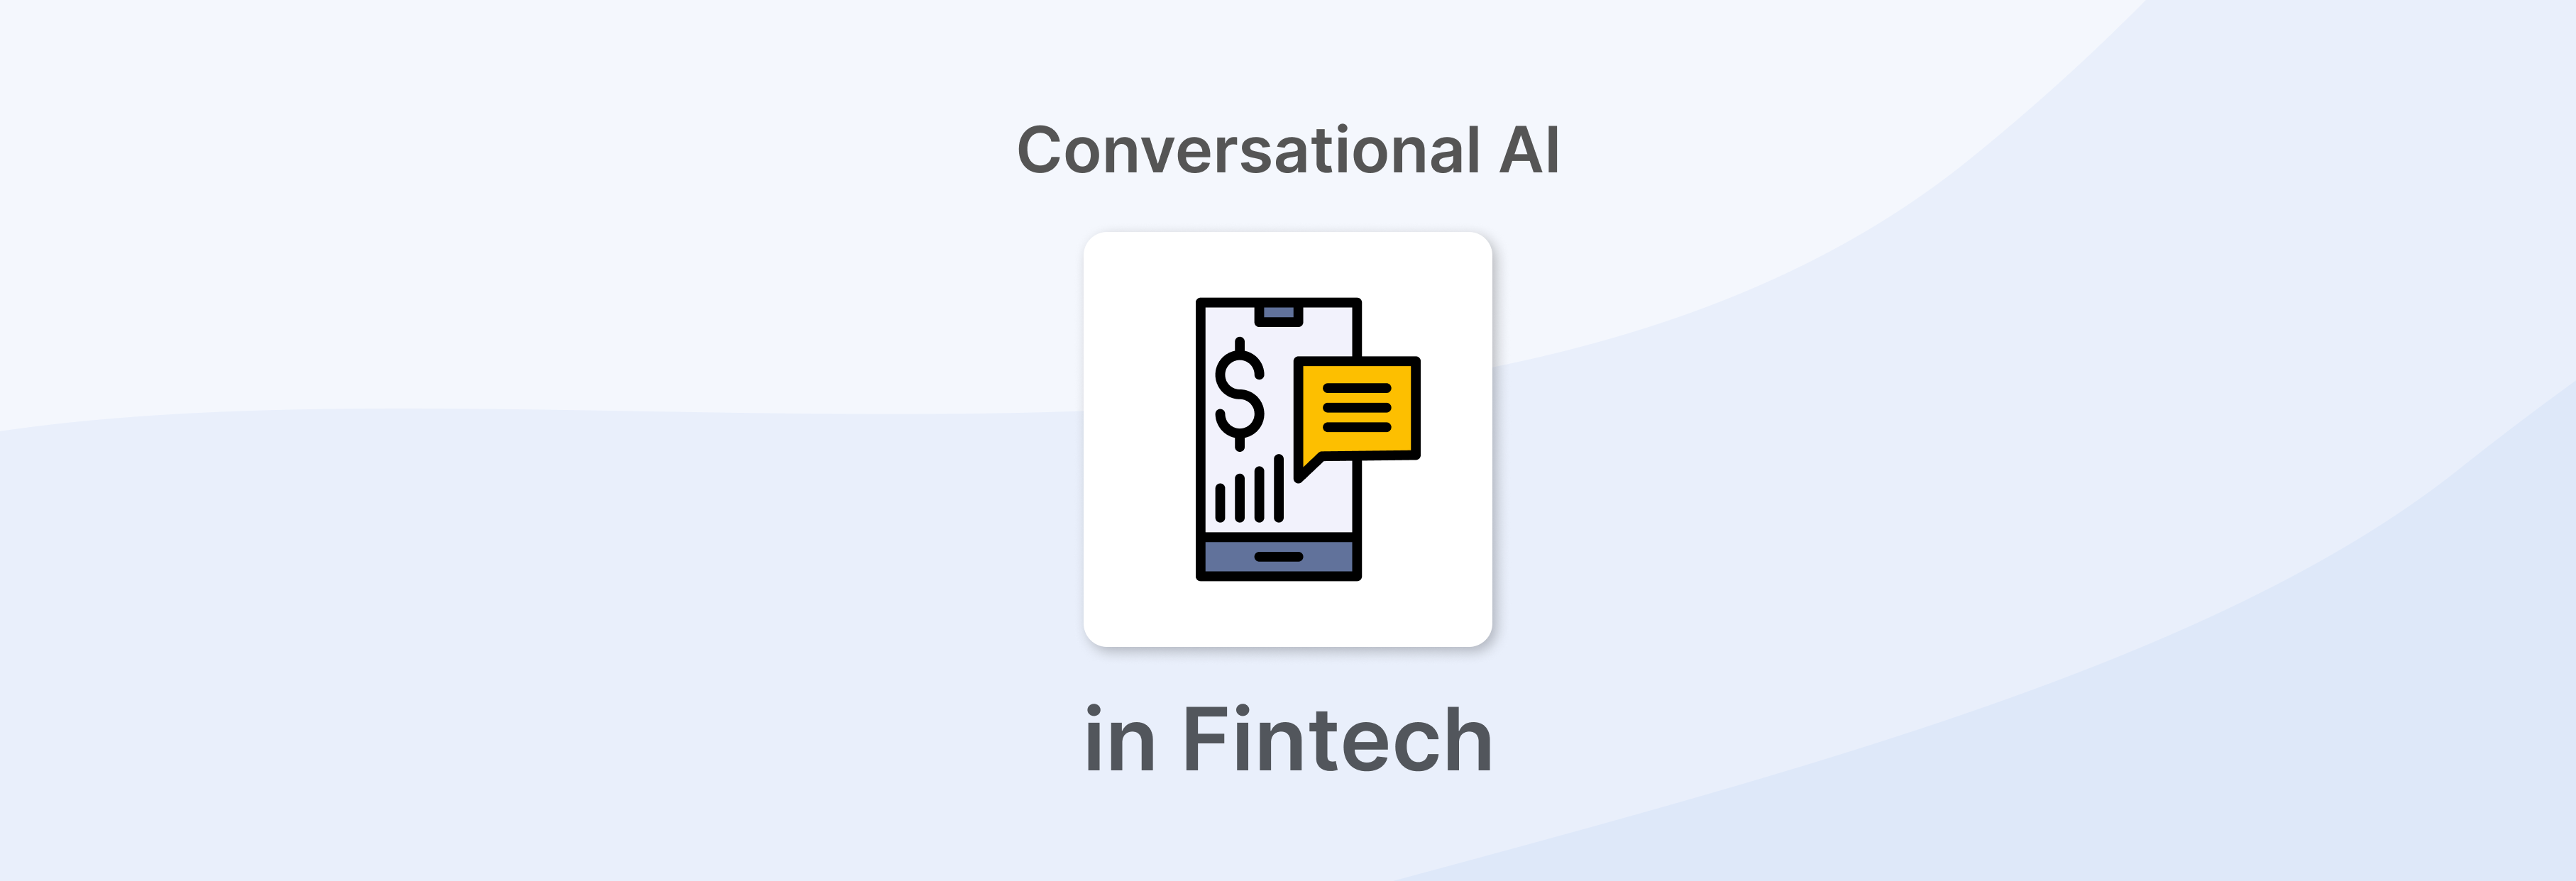 Conversational AI in Fintech